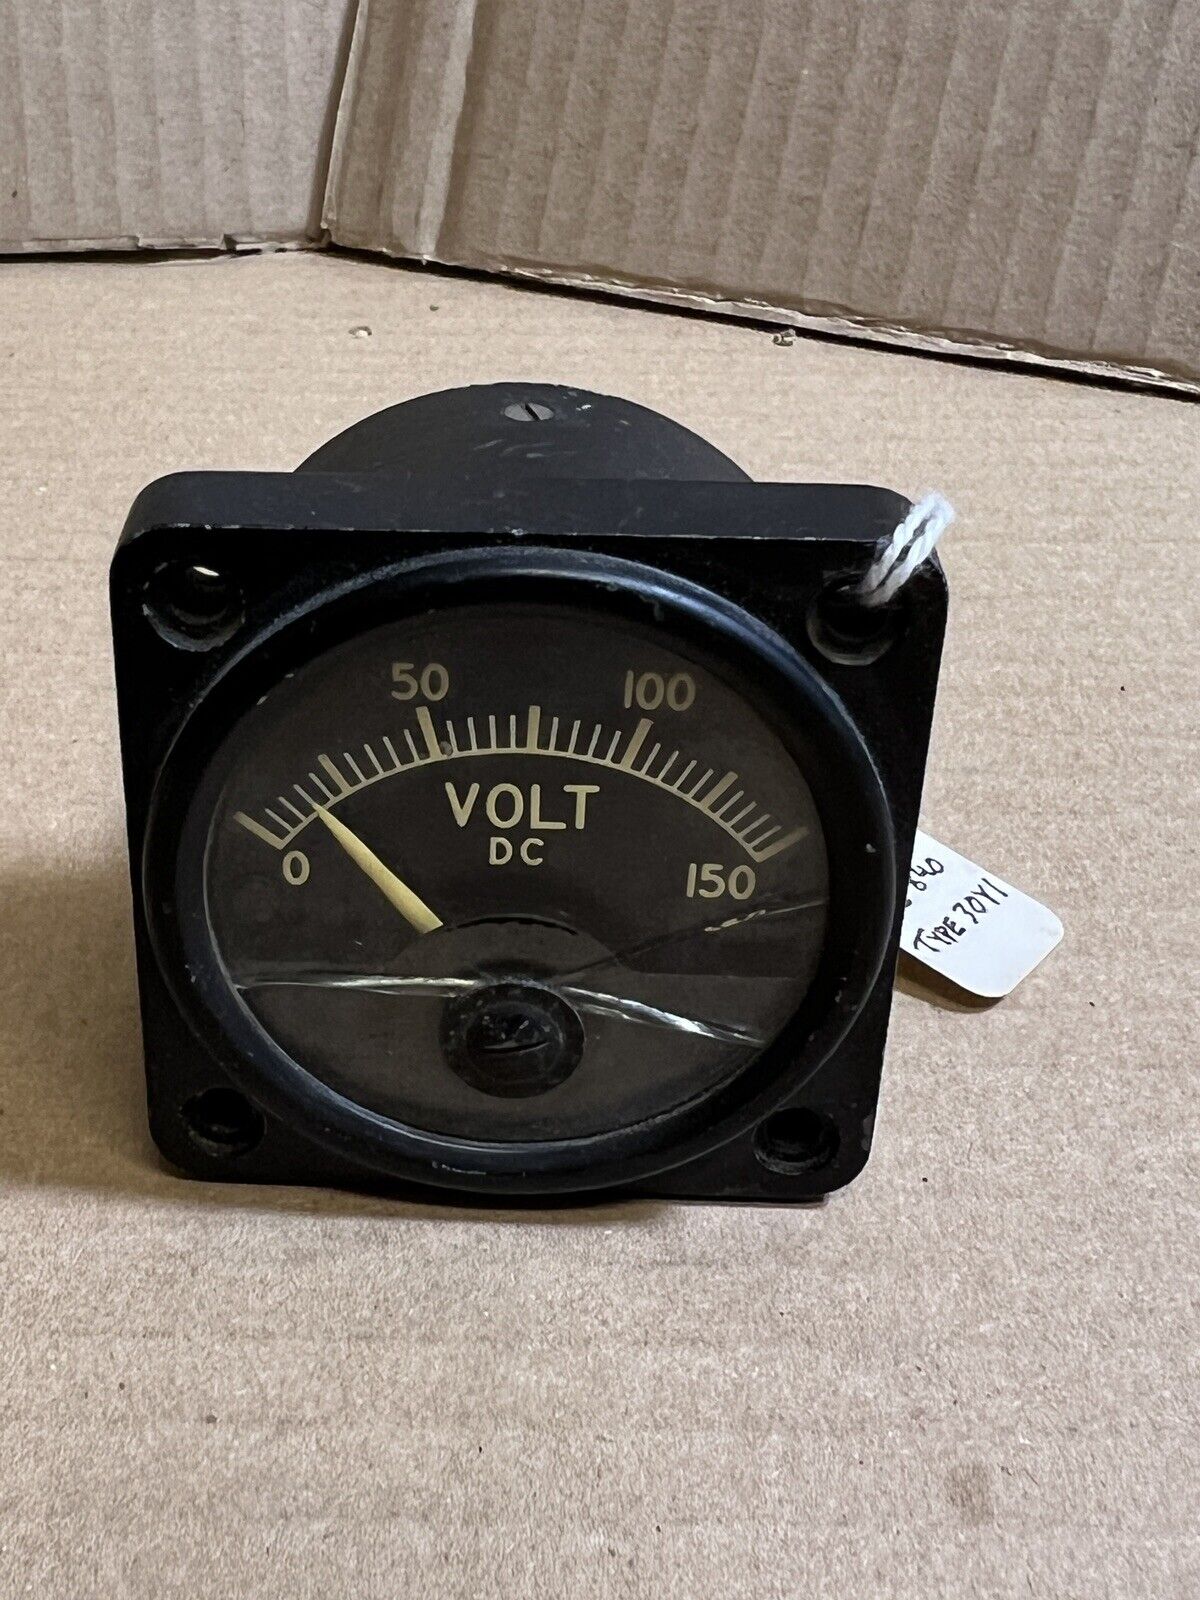 Vintage Weston Ammeter Voltmeter Gauge Indicator DC Model 840 0-150VDC